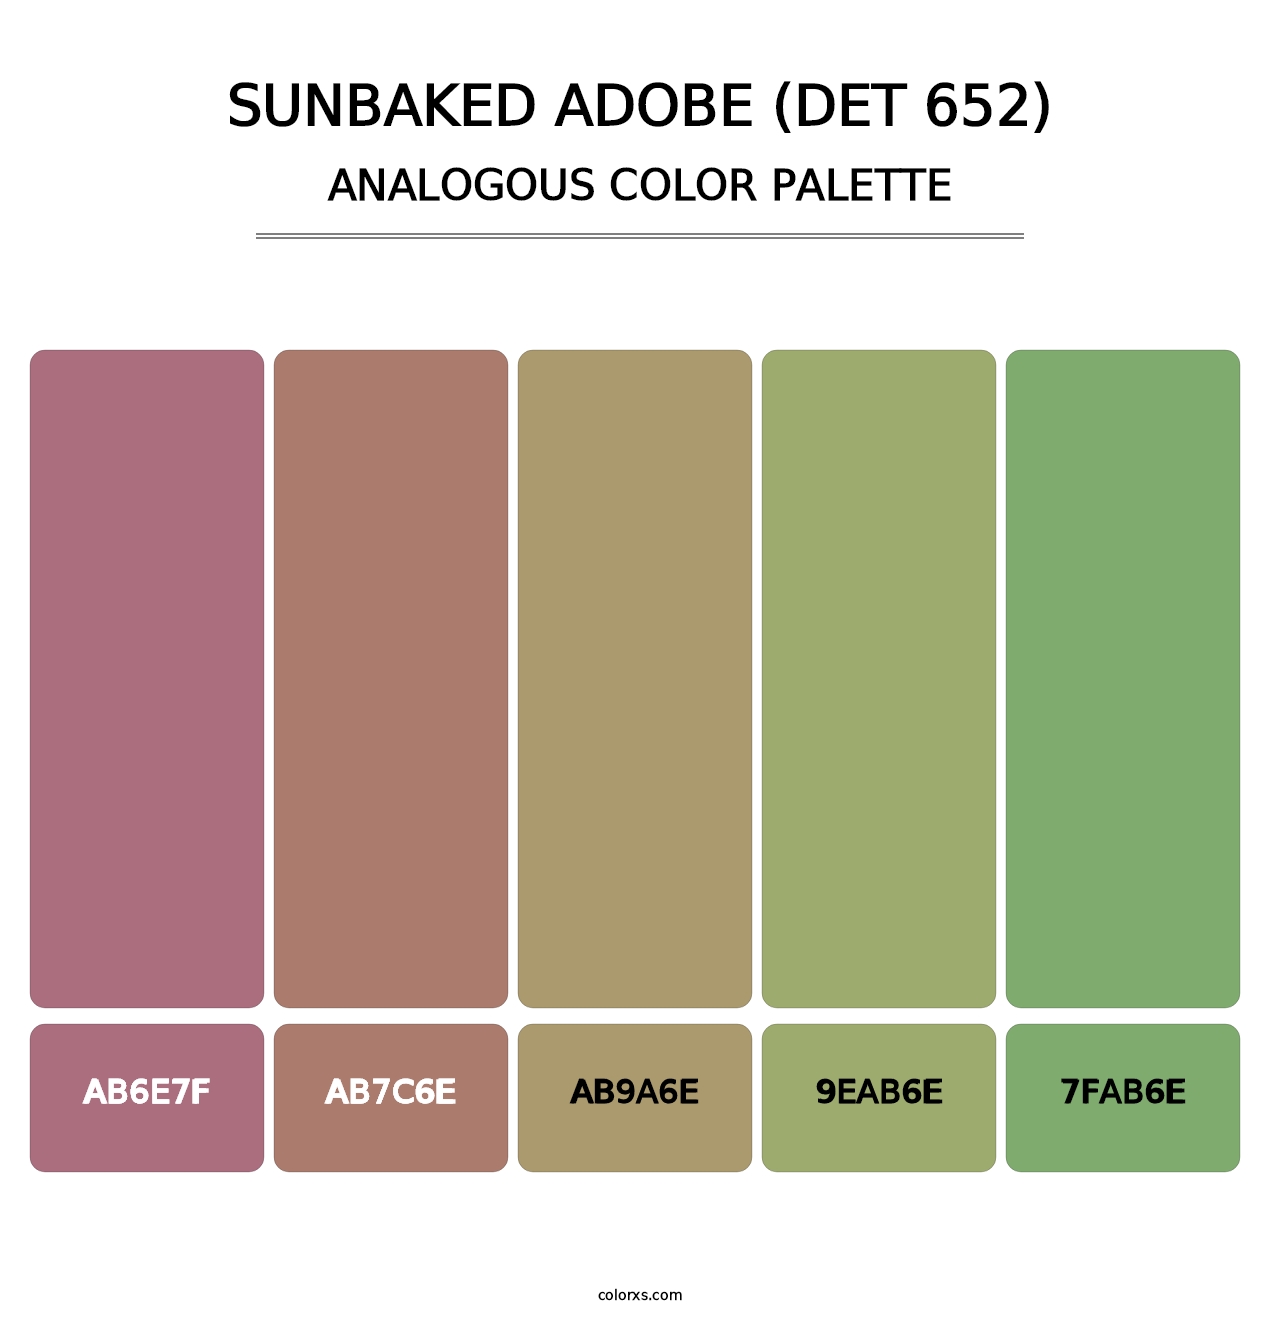 Sunbaked Adobe (DET 652) - Analogous Color Palette